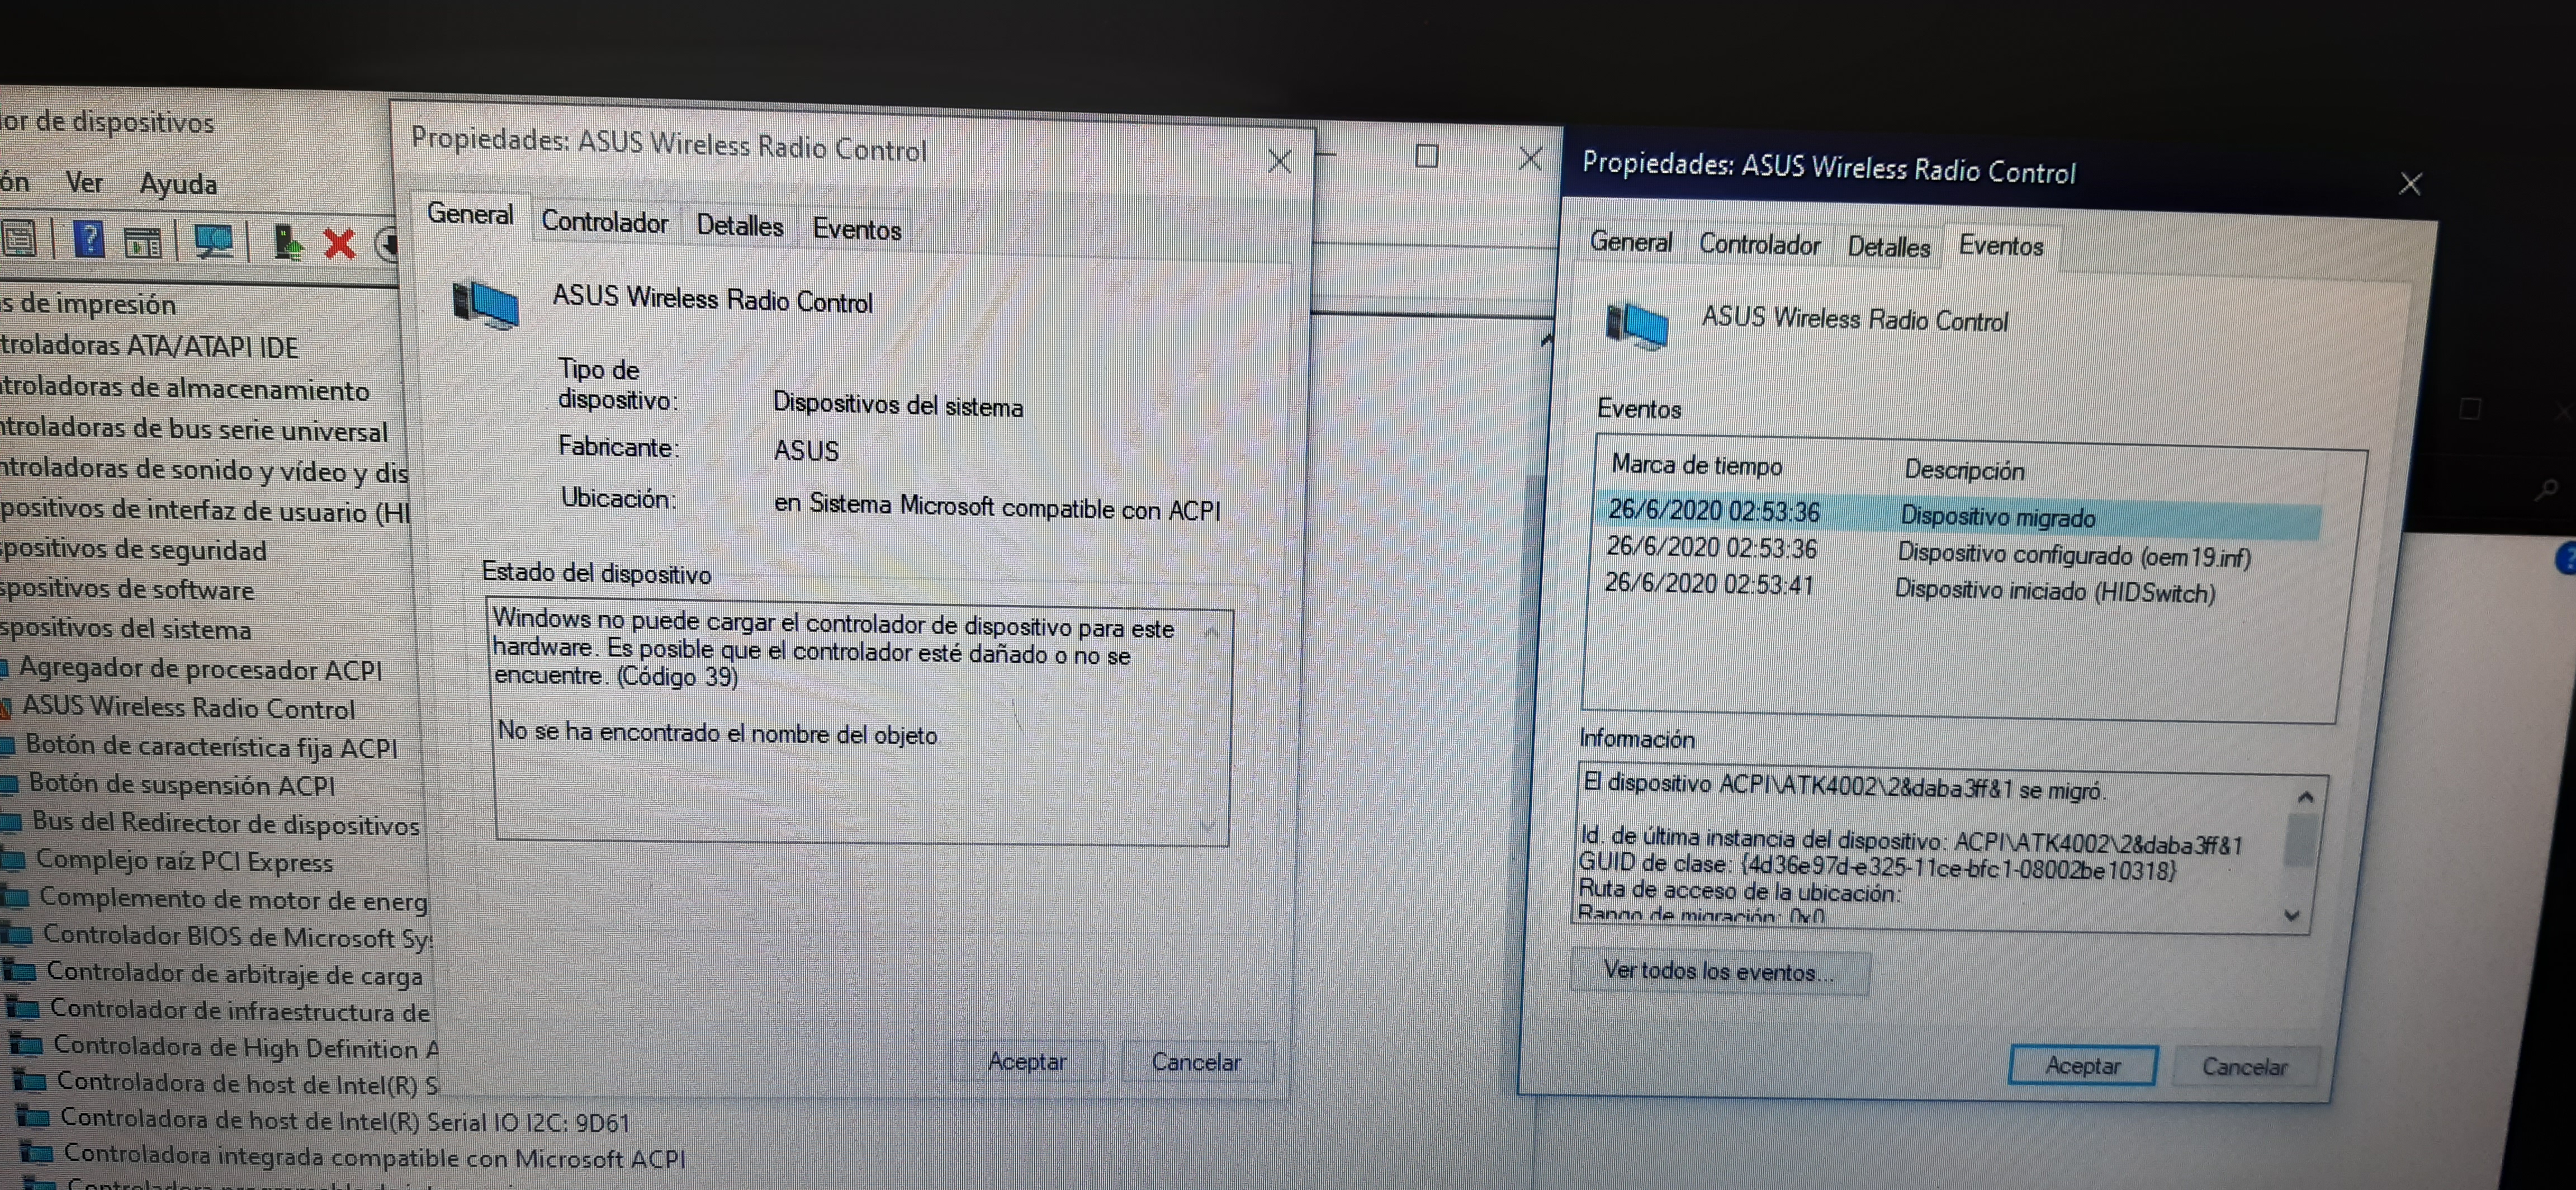 Dispositivo Asus wireles radio control migrado error 39 : Windows -  Microsoft Community